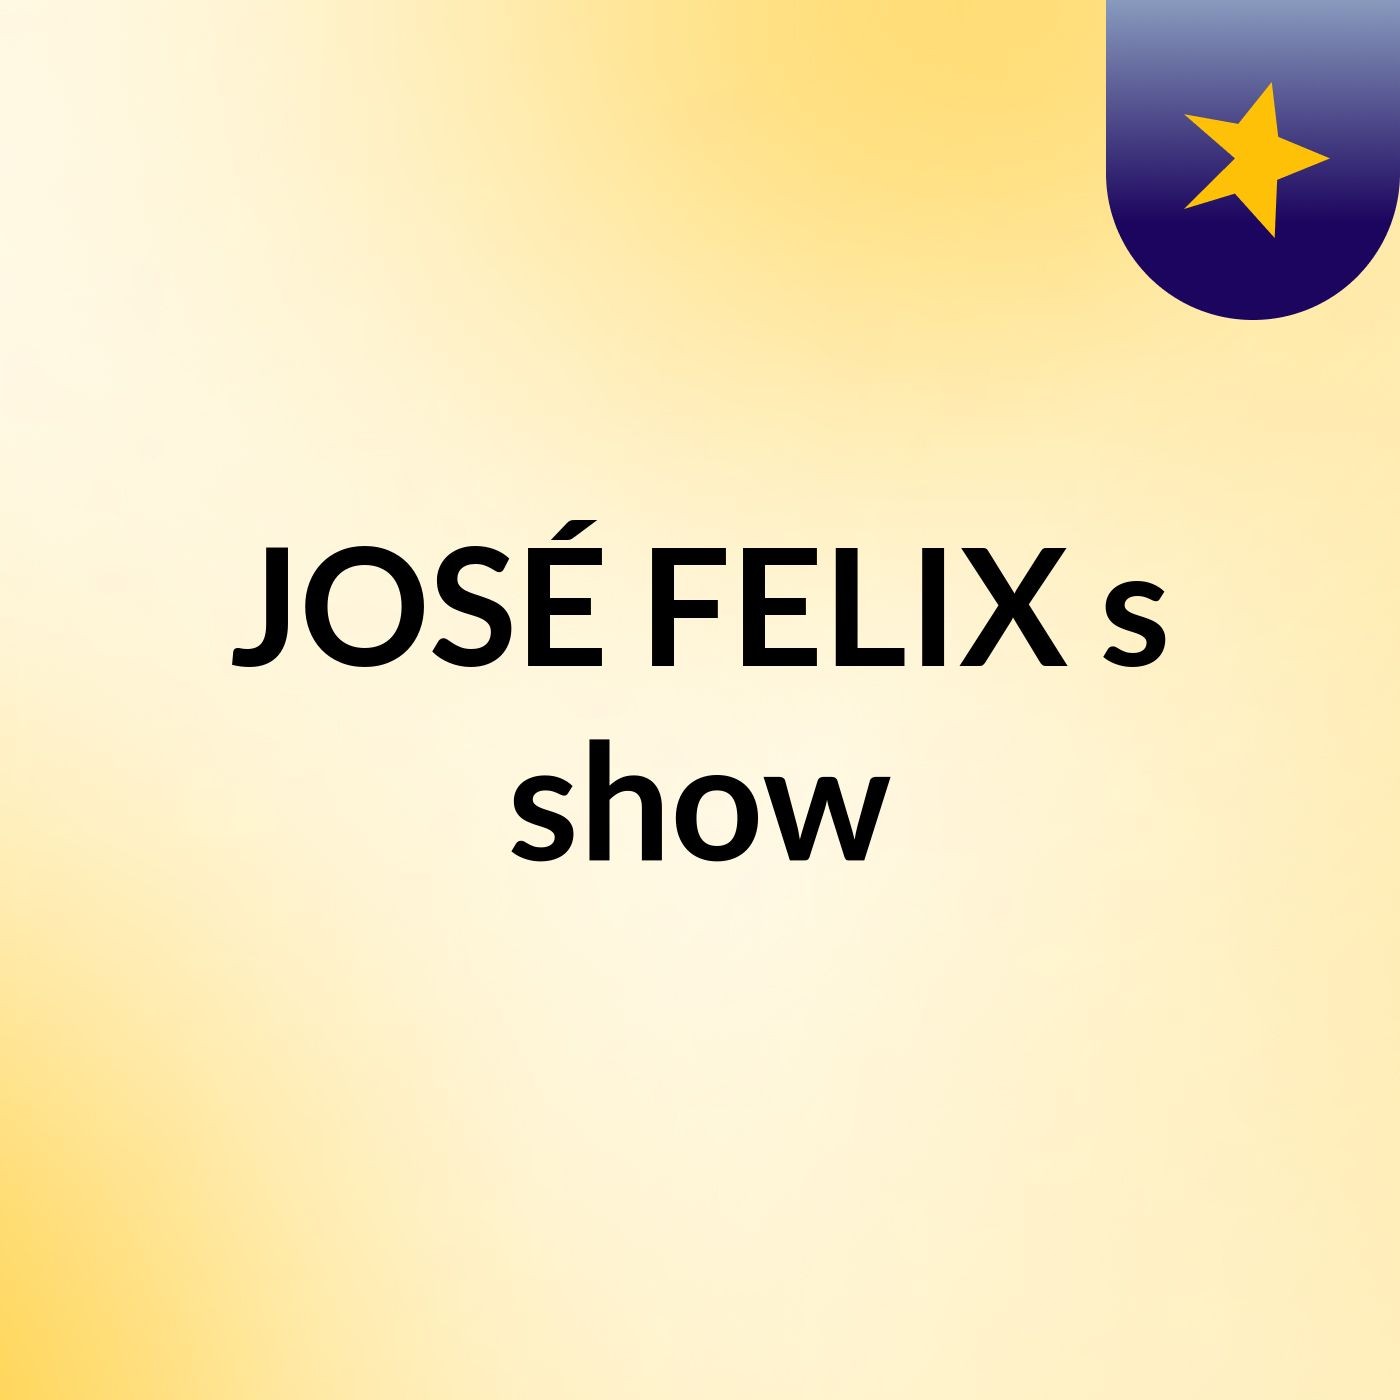 JOSÉ FELIX's show